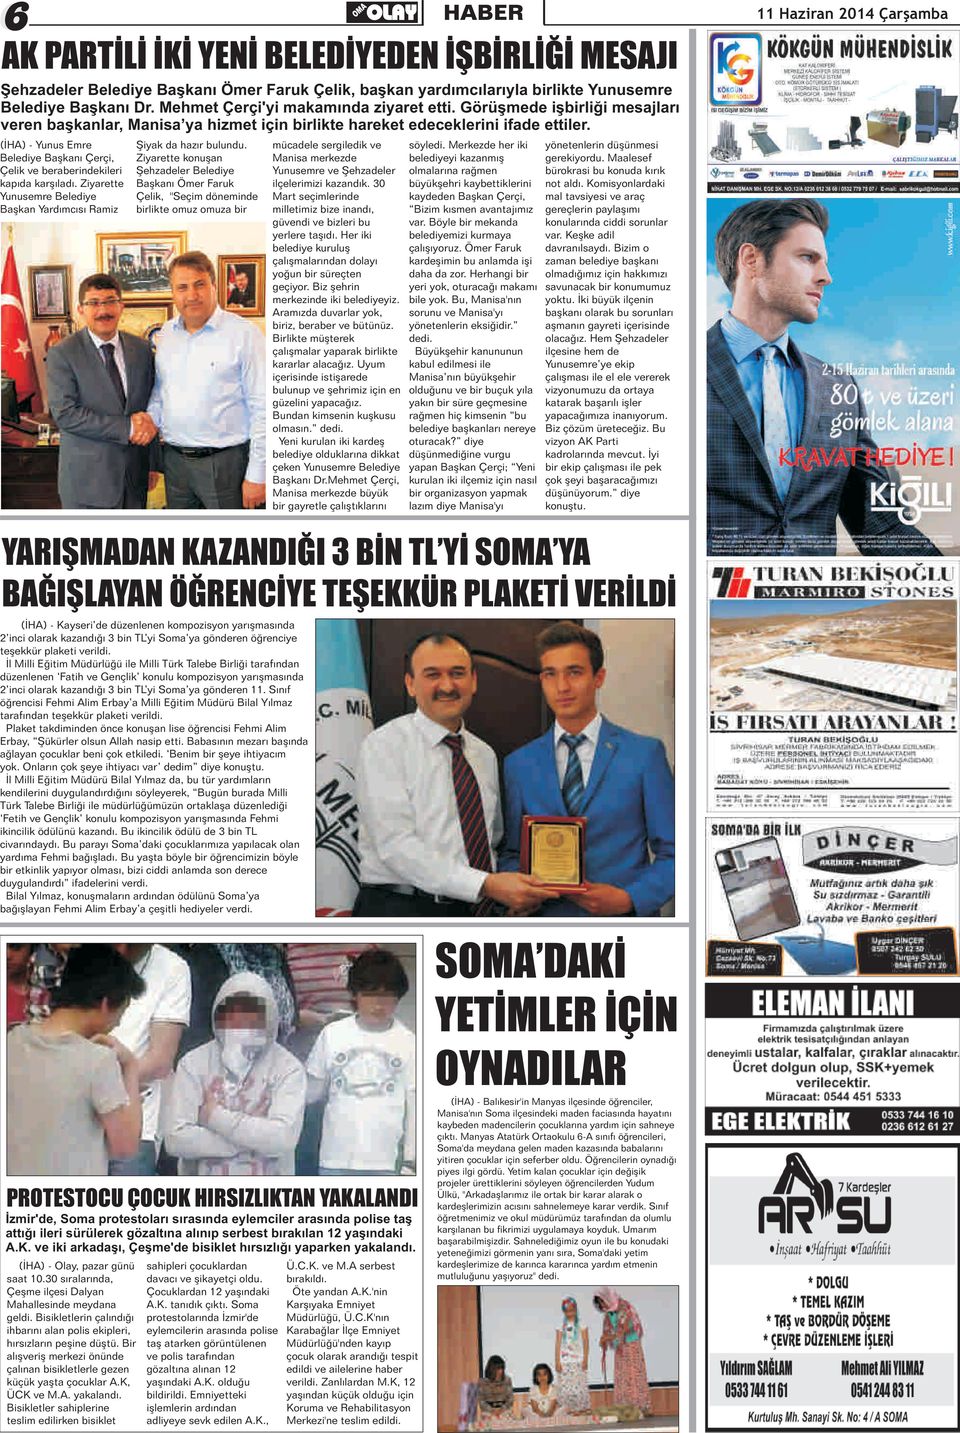 Merkezde her iki yönetenlerin düşünmesi elediye Başkanı Çerçi, Ziyarette konuşan Manisa merkezde belediyeyi kazanmış gerekiyordu.